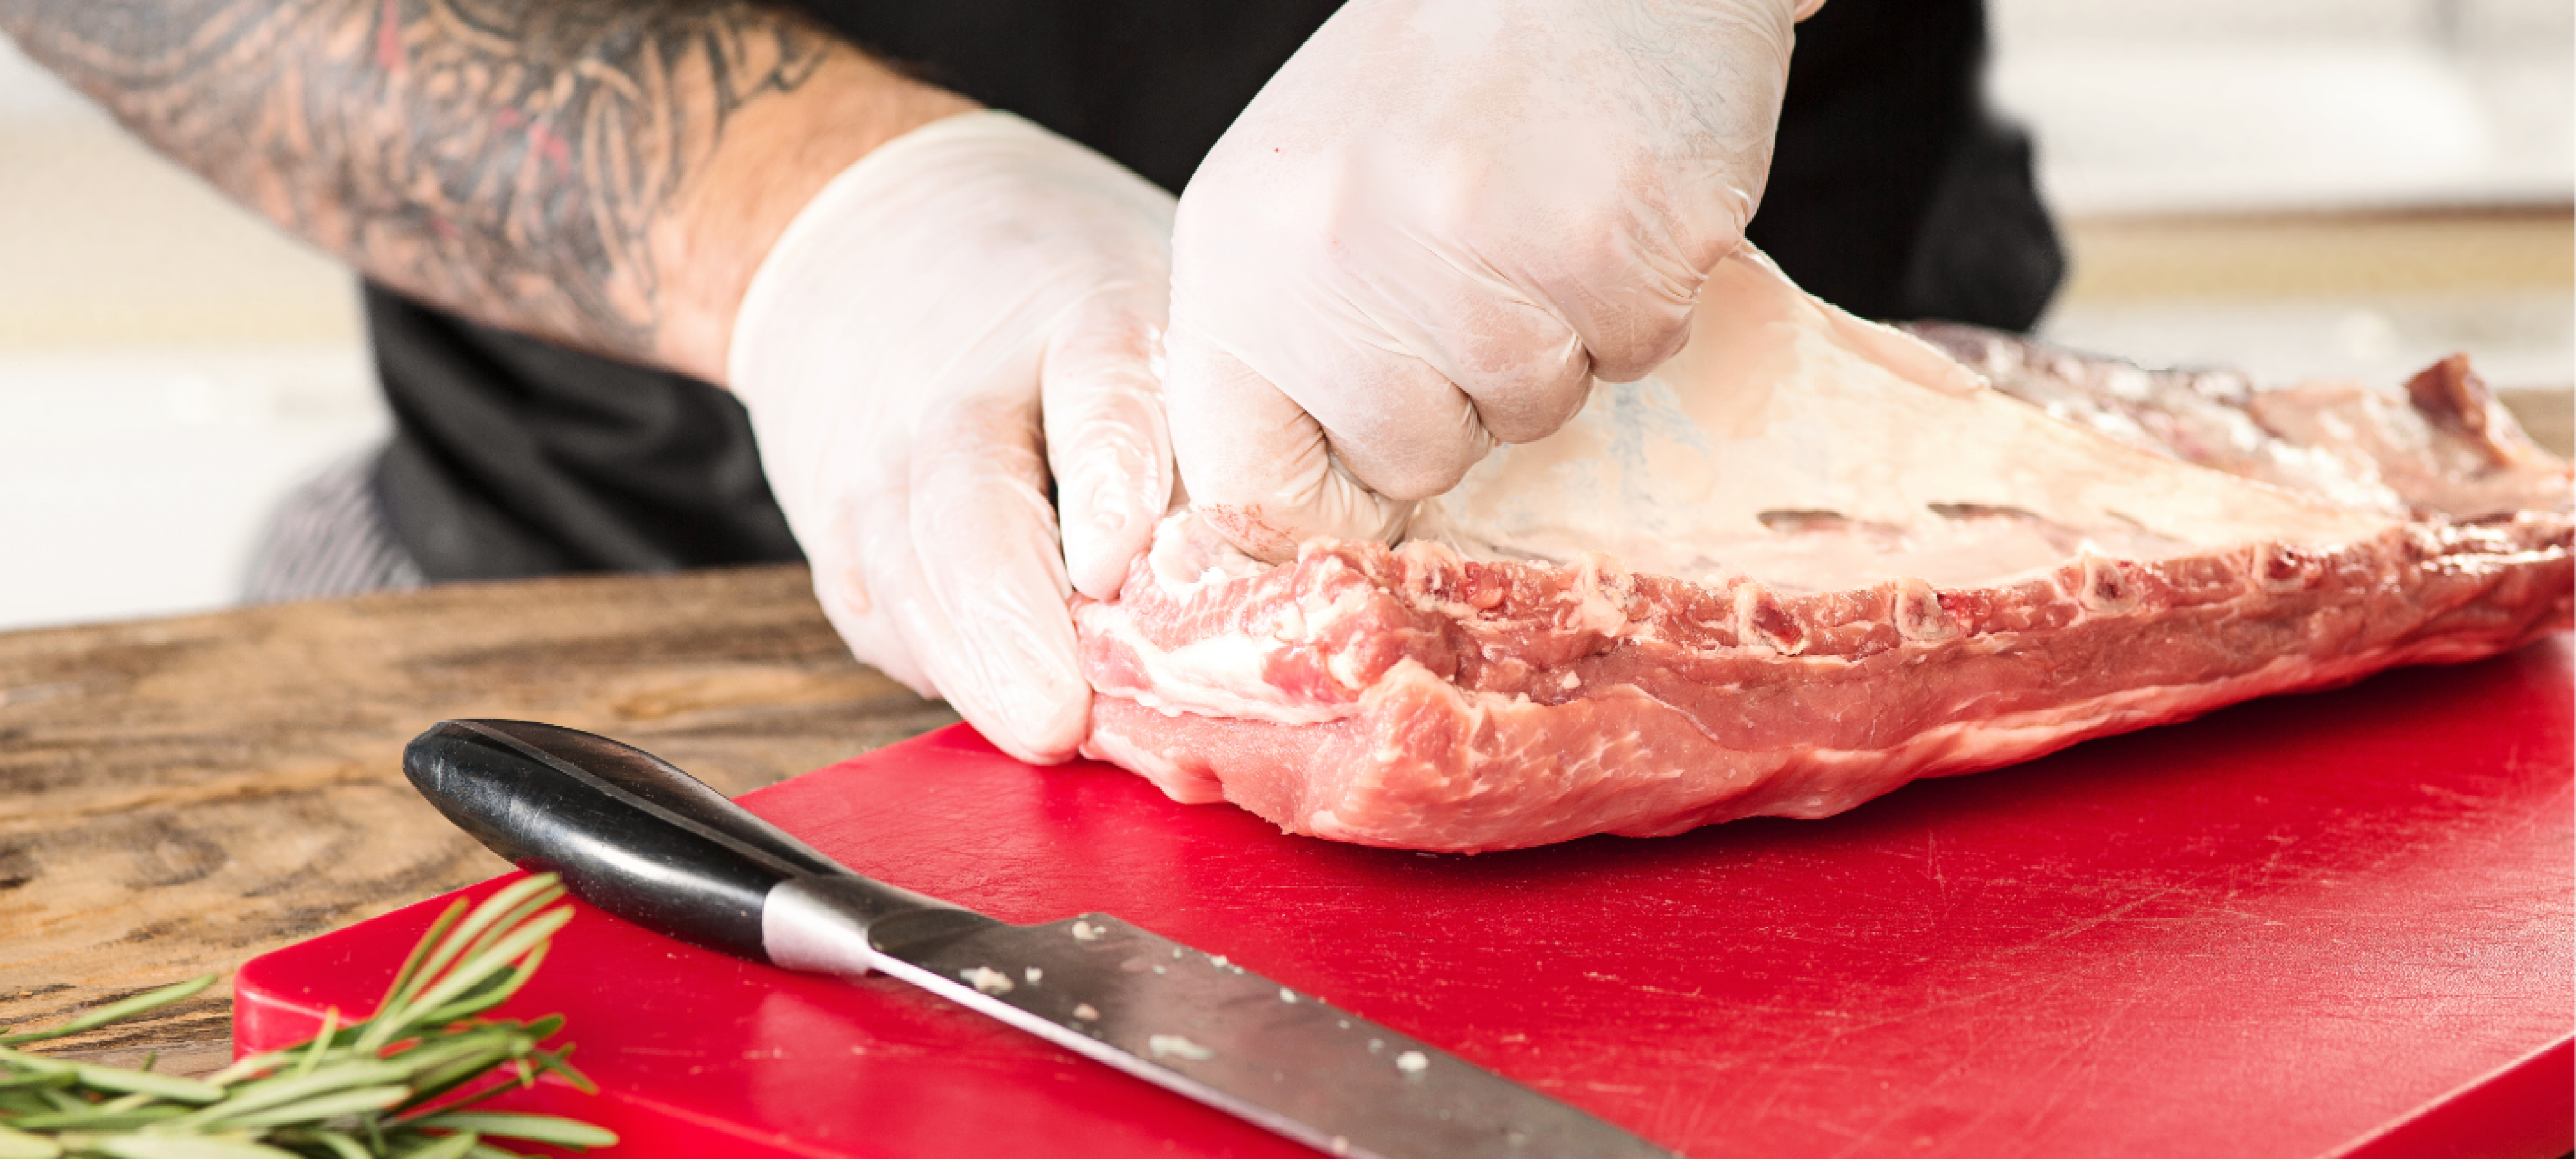 List of Best Knives to Cut Frozen Meat